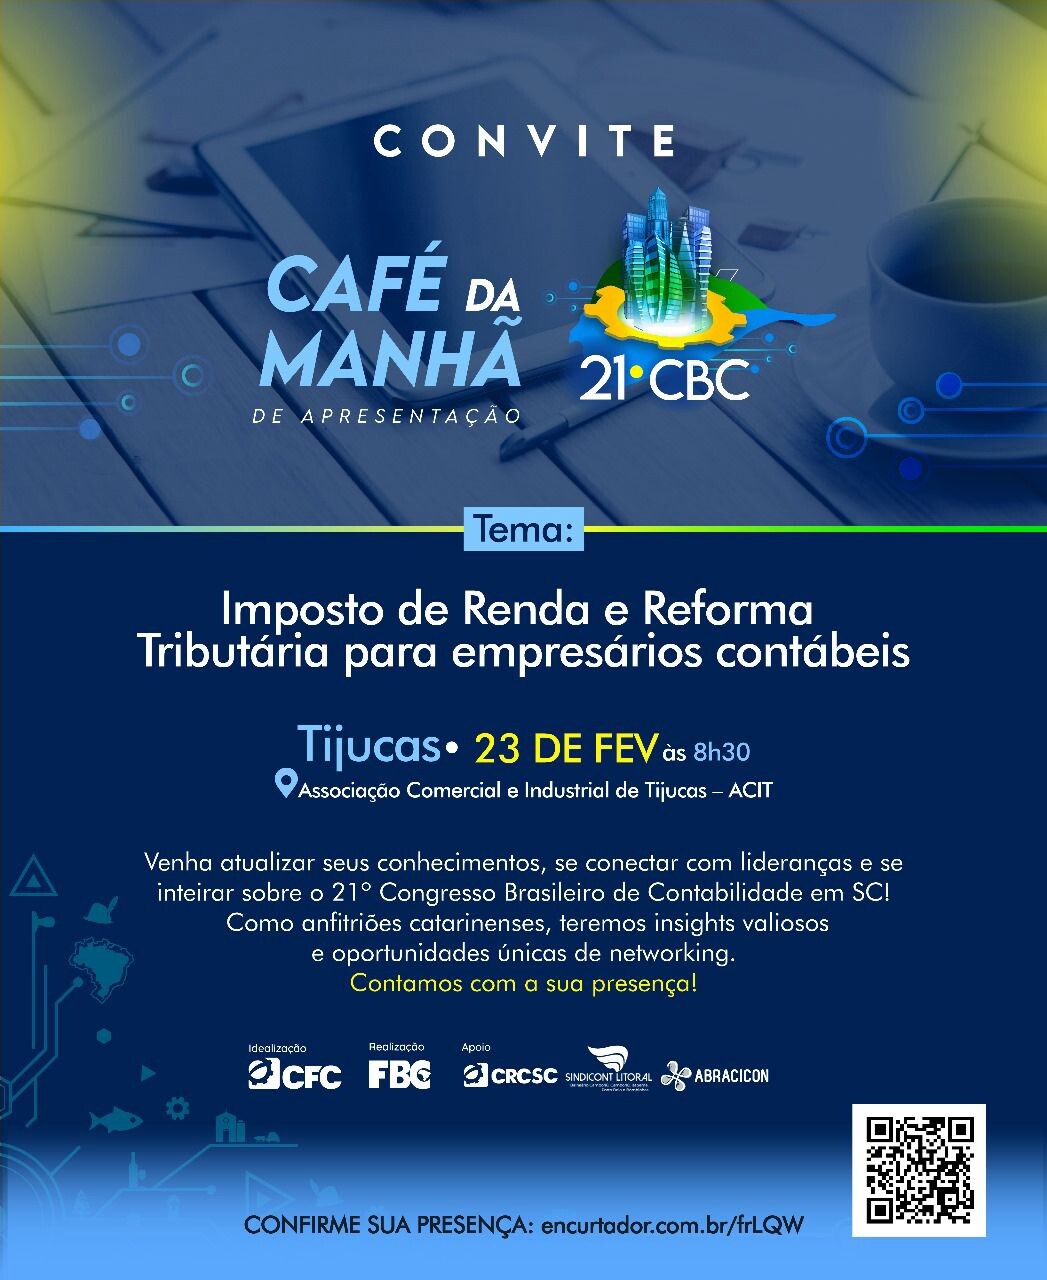 CRCSC promove evento gratuito sobre Imposto de Renda e Reforma Tributária para Empresários Contábeis em Tijucas